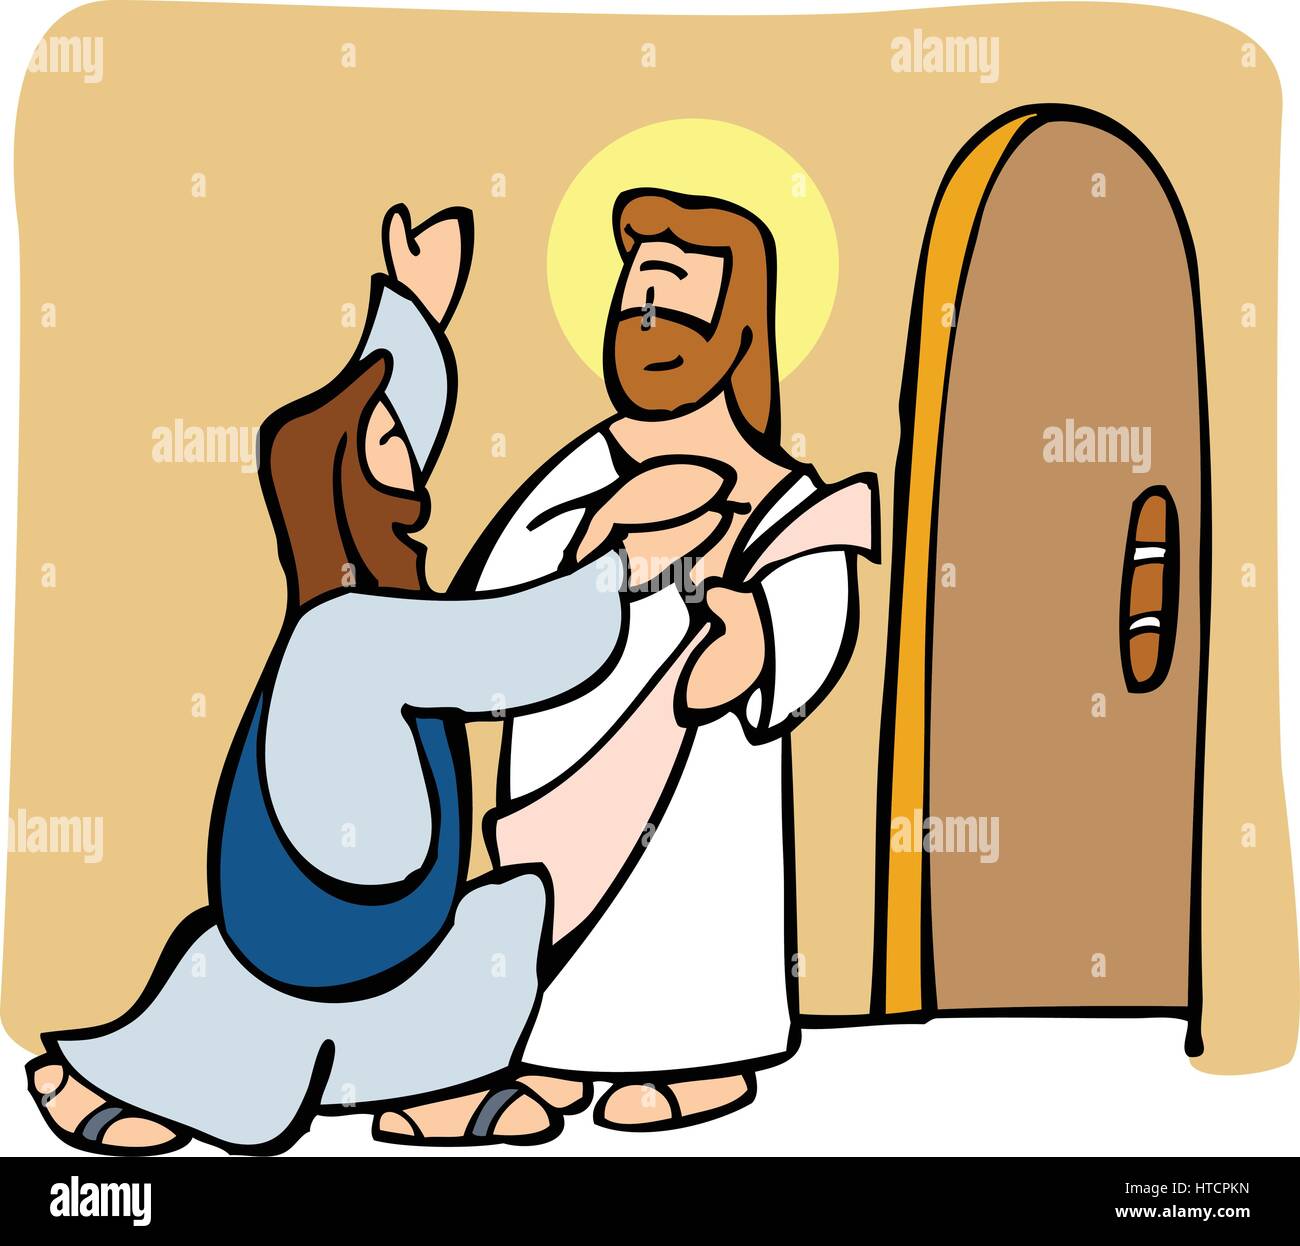 Tommaso apostolo infine crede in Gesù la risurrezione dopo aver visto lui e toccando le sue ferite. Illustrazione Vettoriale